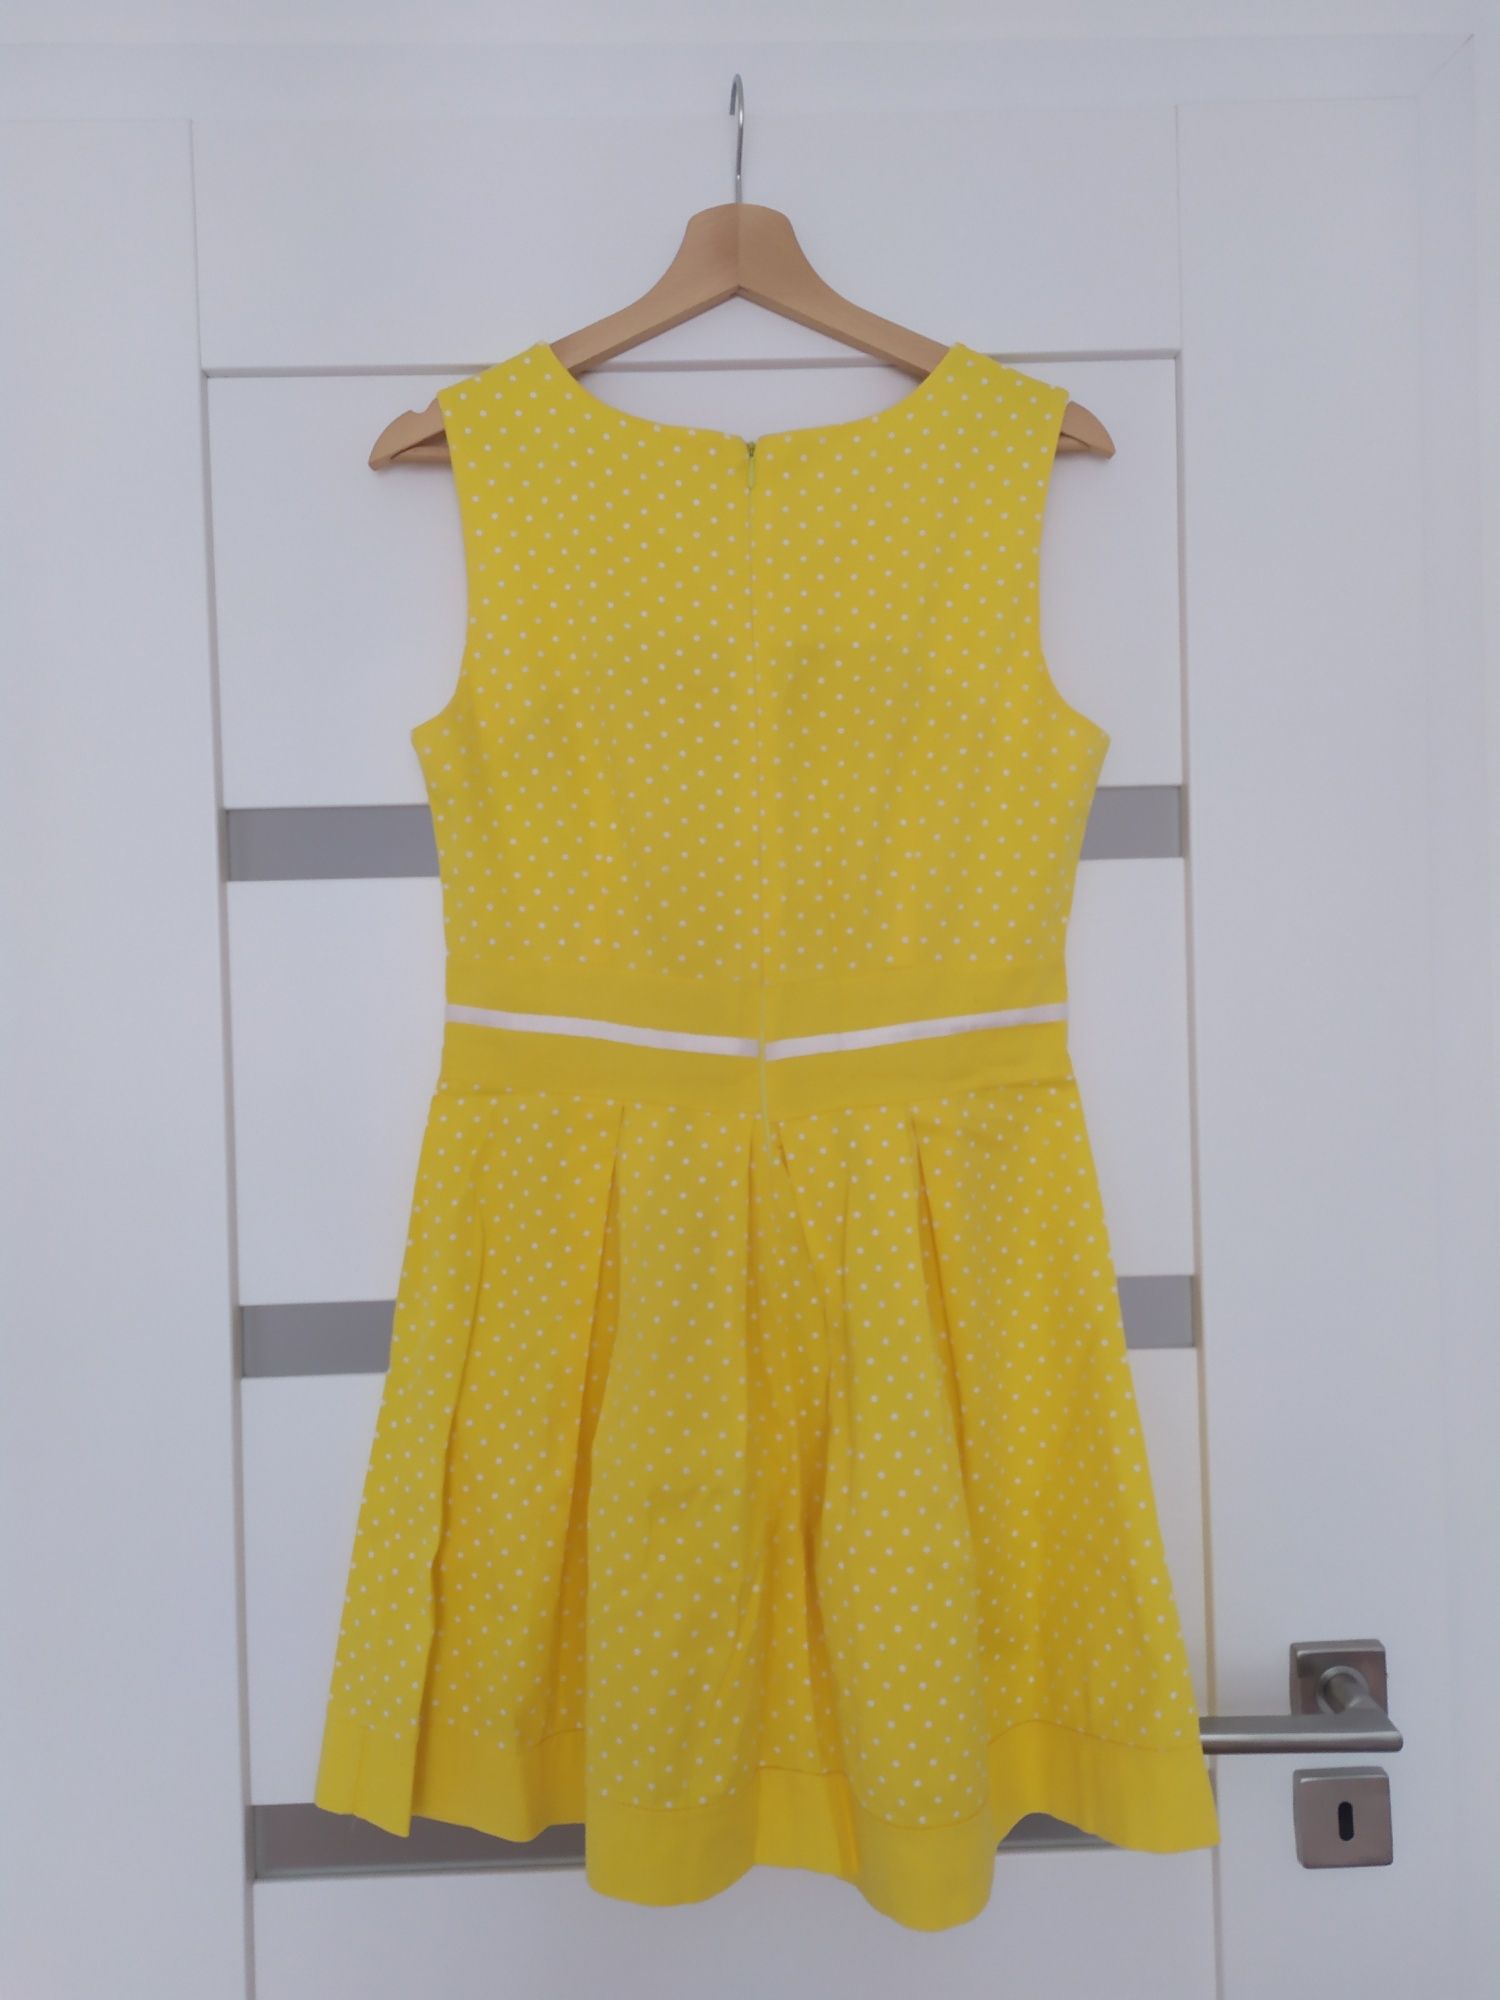 Śliczna jaskrawa żółta sukienka w białe groszki (polka dot)